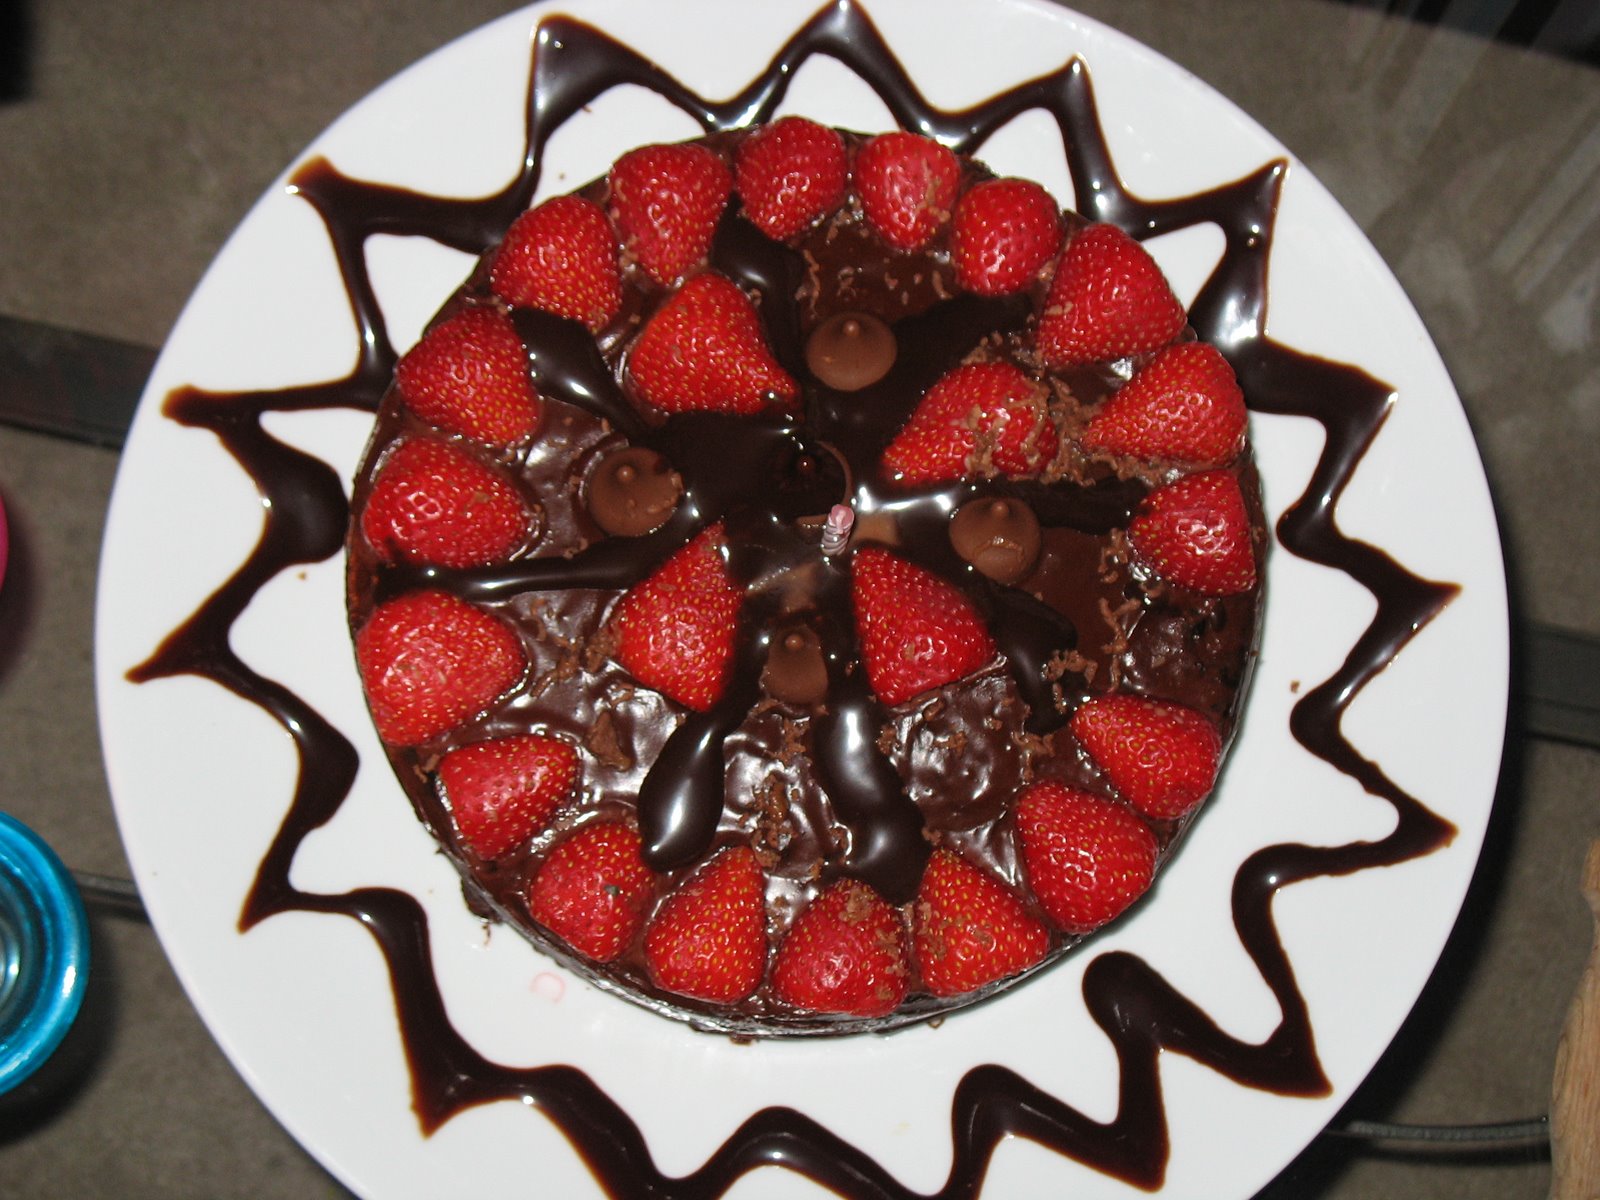 Homemade dark chocolate cake